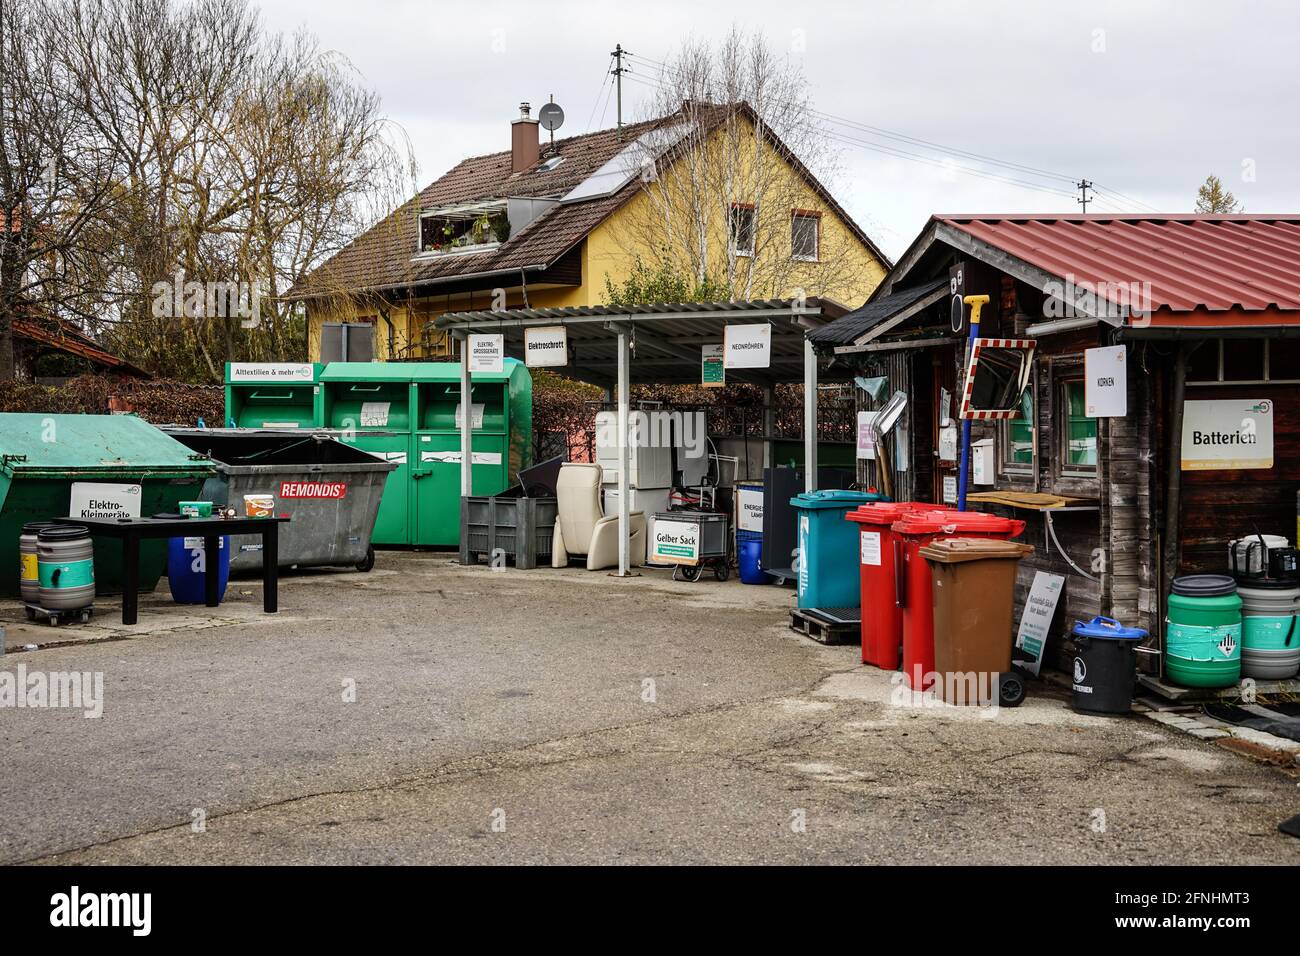 Un centro de reciclaje en un pequeño pueblo con numerosos contenedores de diferentes tamaños para diversos materiales reciclables. Foto de stock